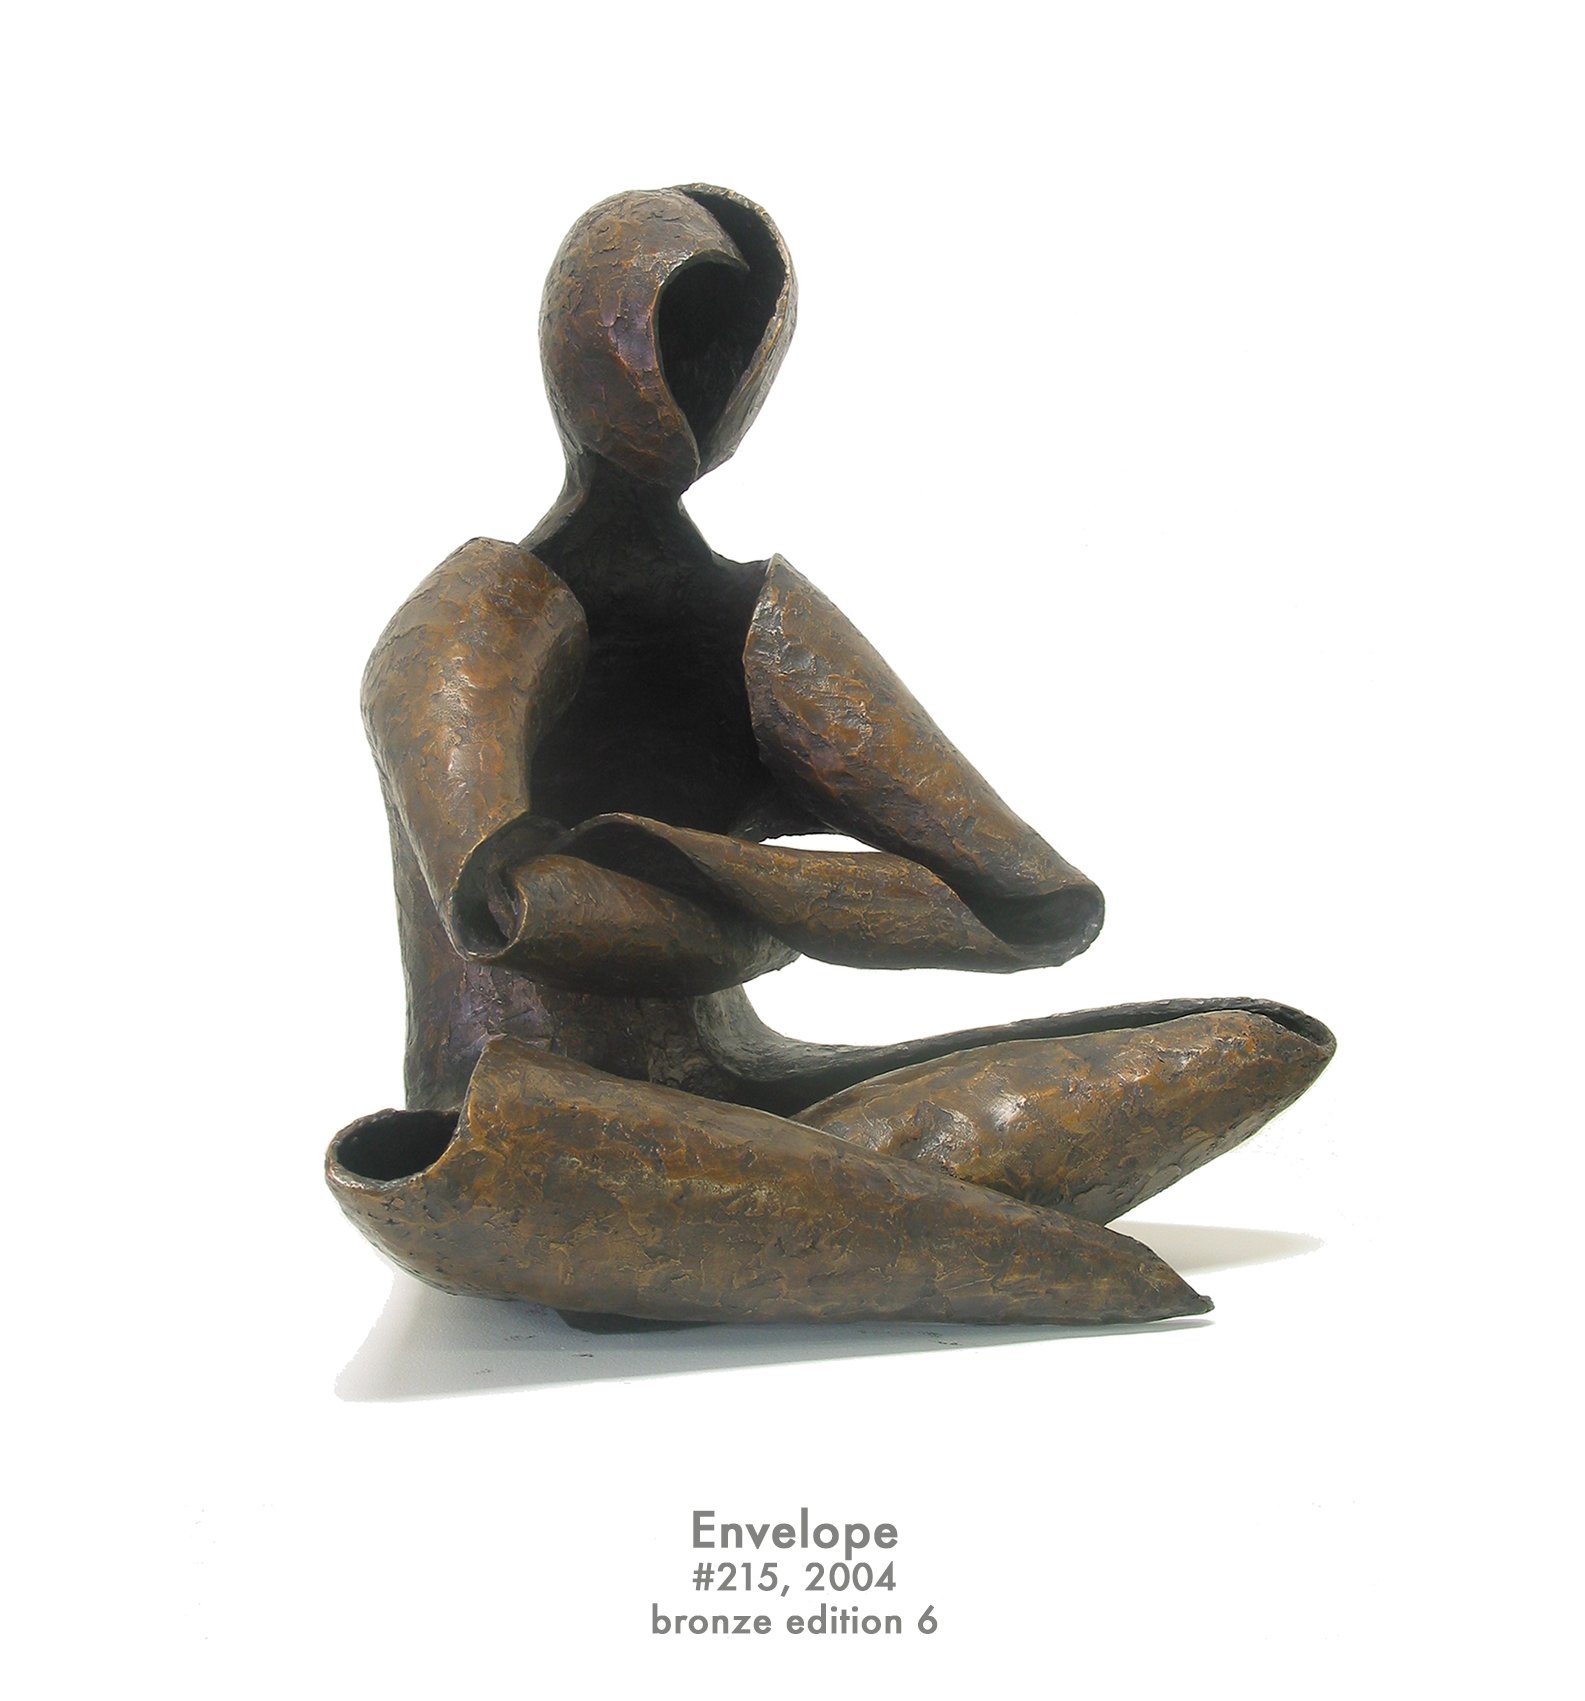 Envelope, 2004, bronze, #215